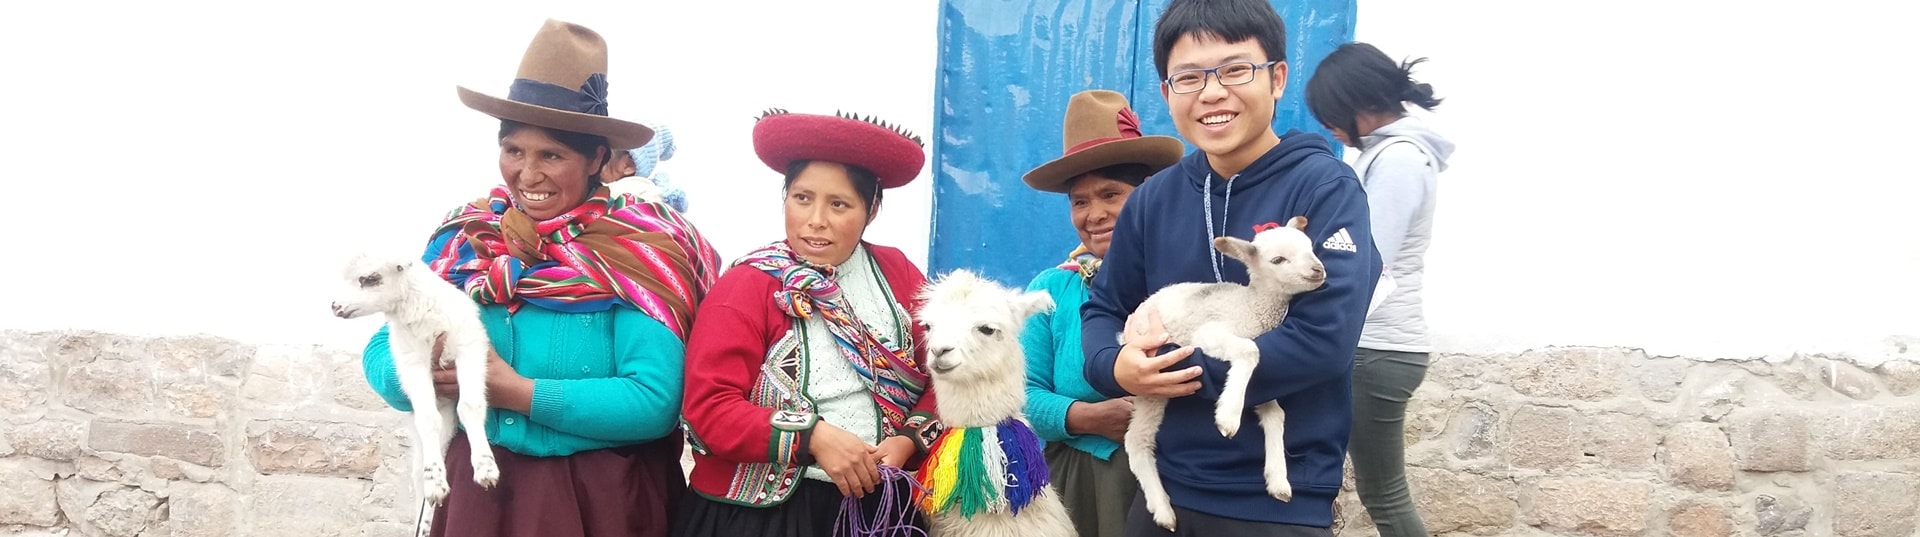 1 Woche spezielles Freiwilligenprogramm in Peru